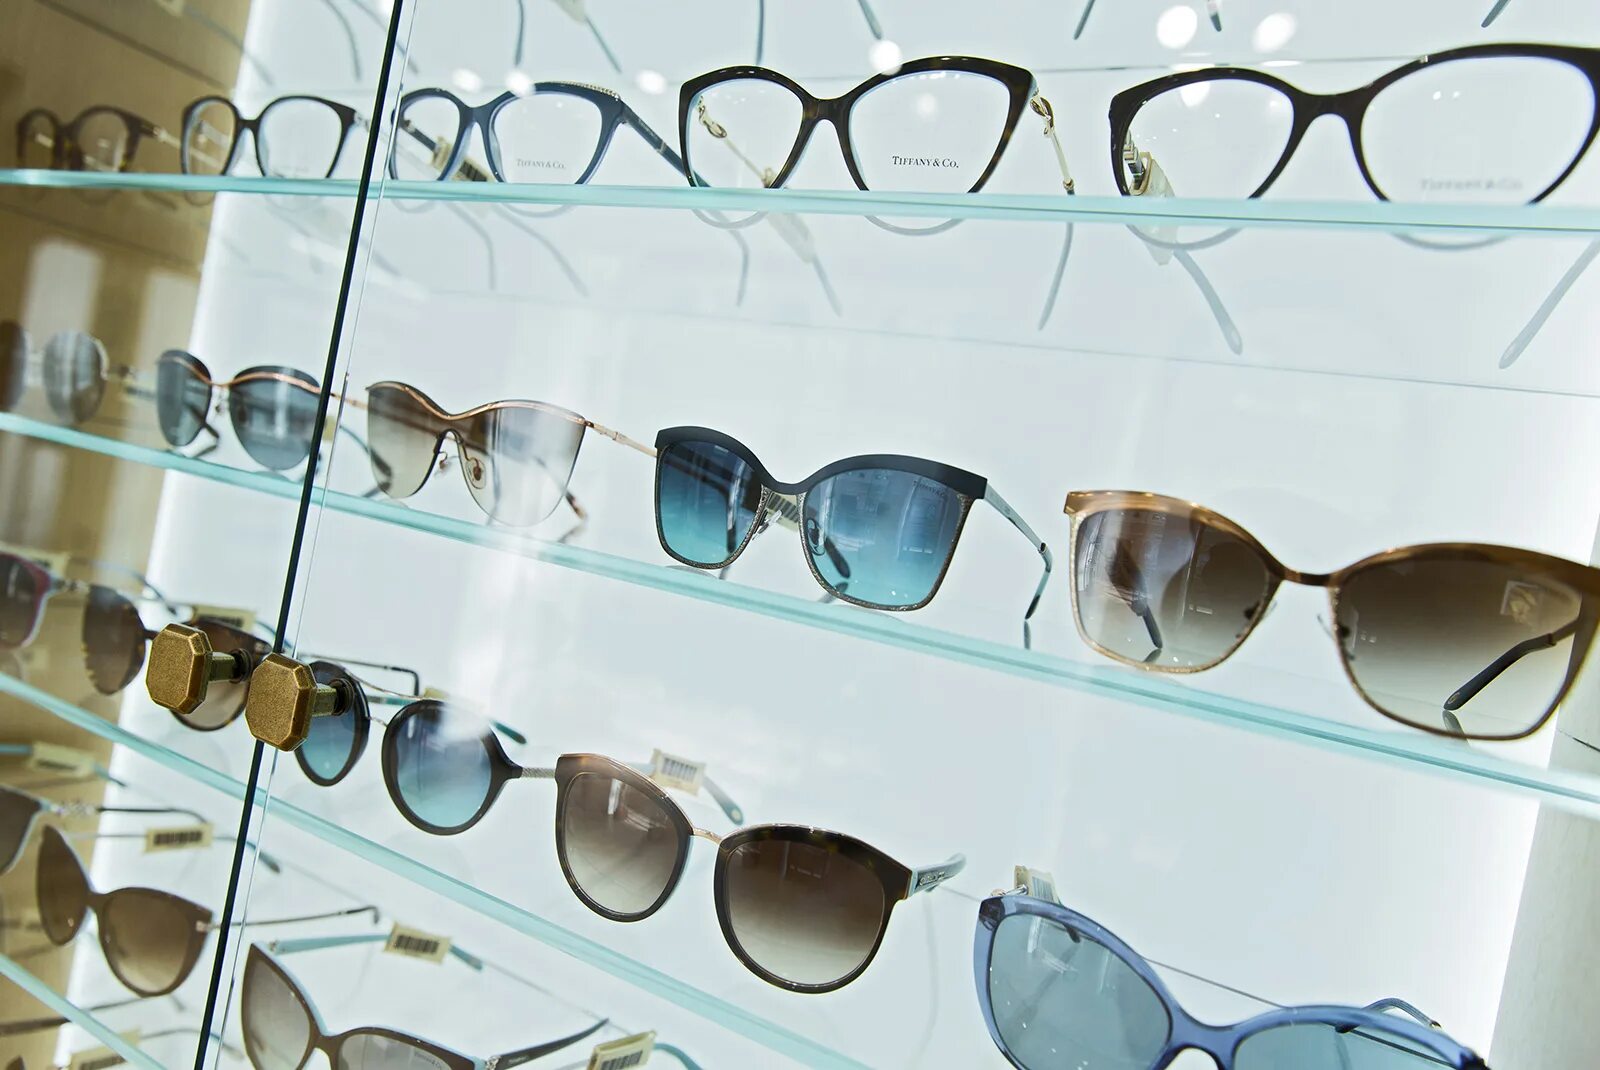 Солнцезащитные очки купить в нижнем новгороде. ГУМ очки магазин. Витрина для солнечных очков. Ассортимент солнцезащитных очков. Солнцезащитные очки на витрине.